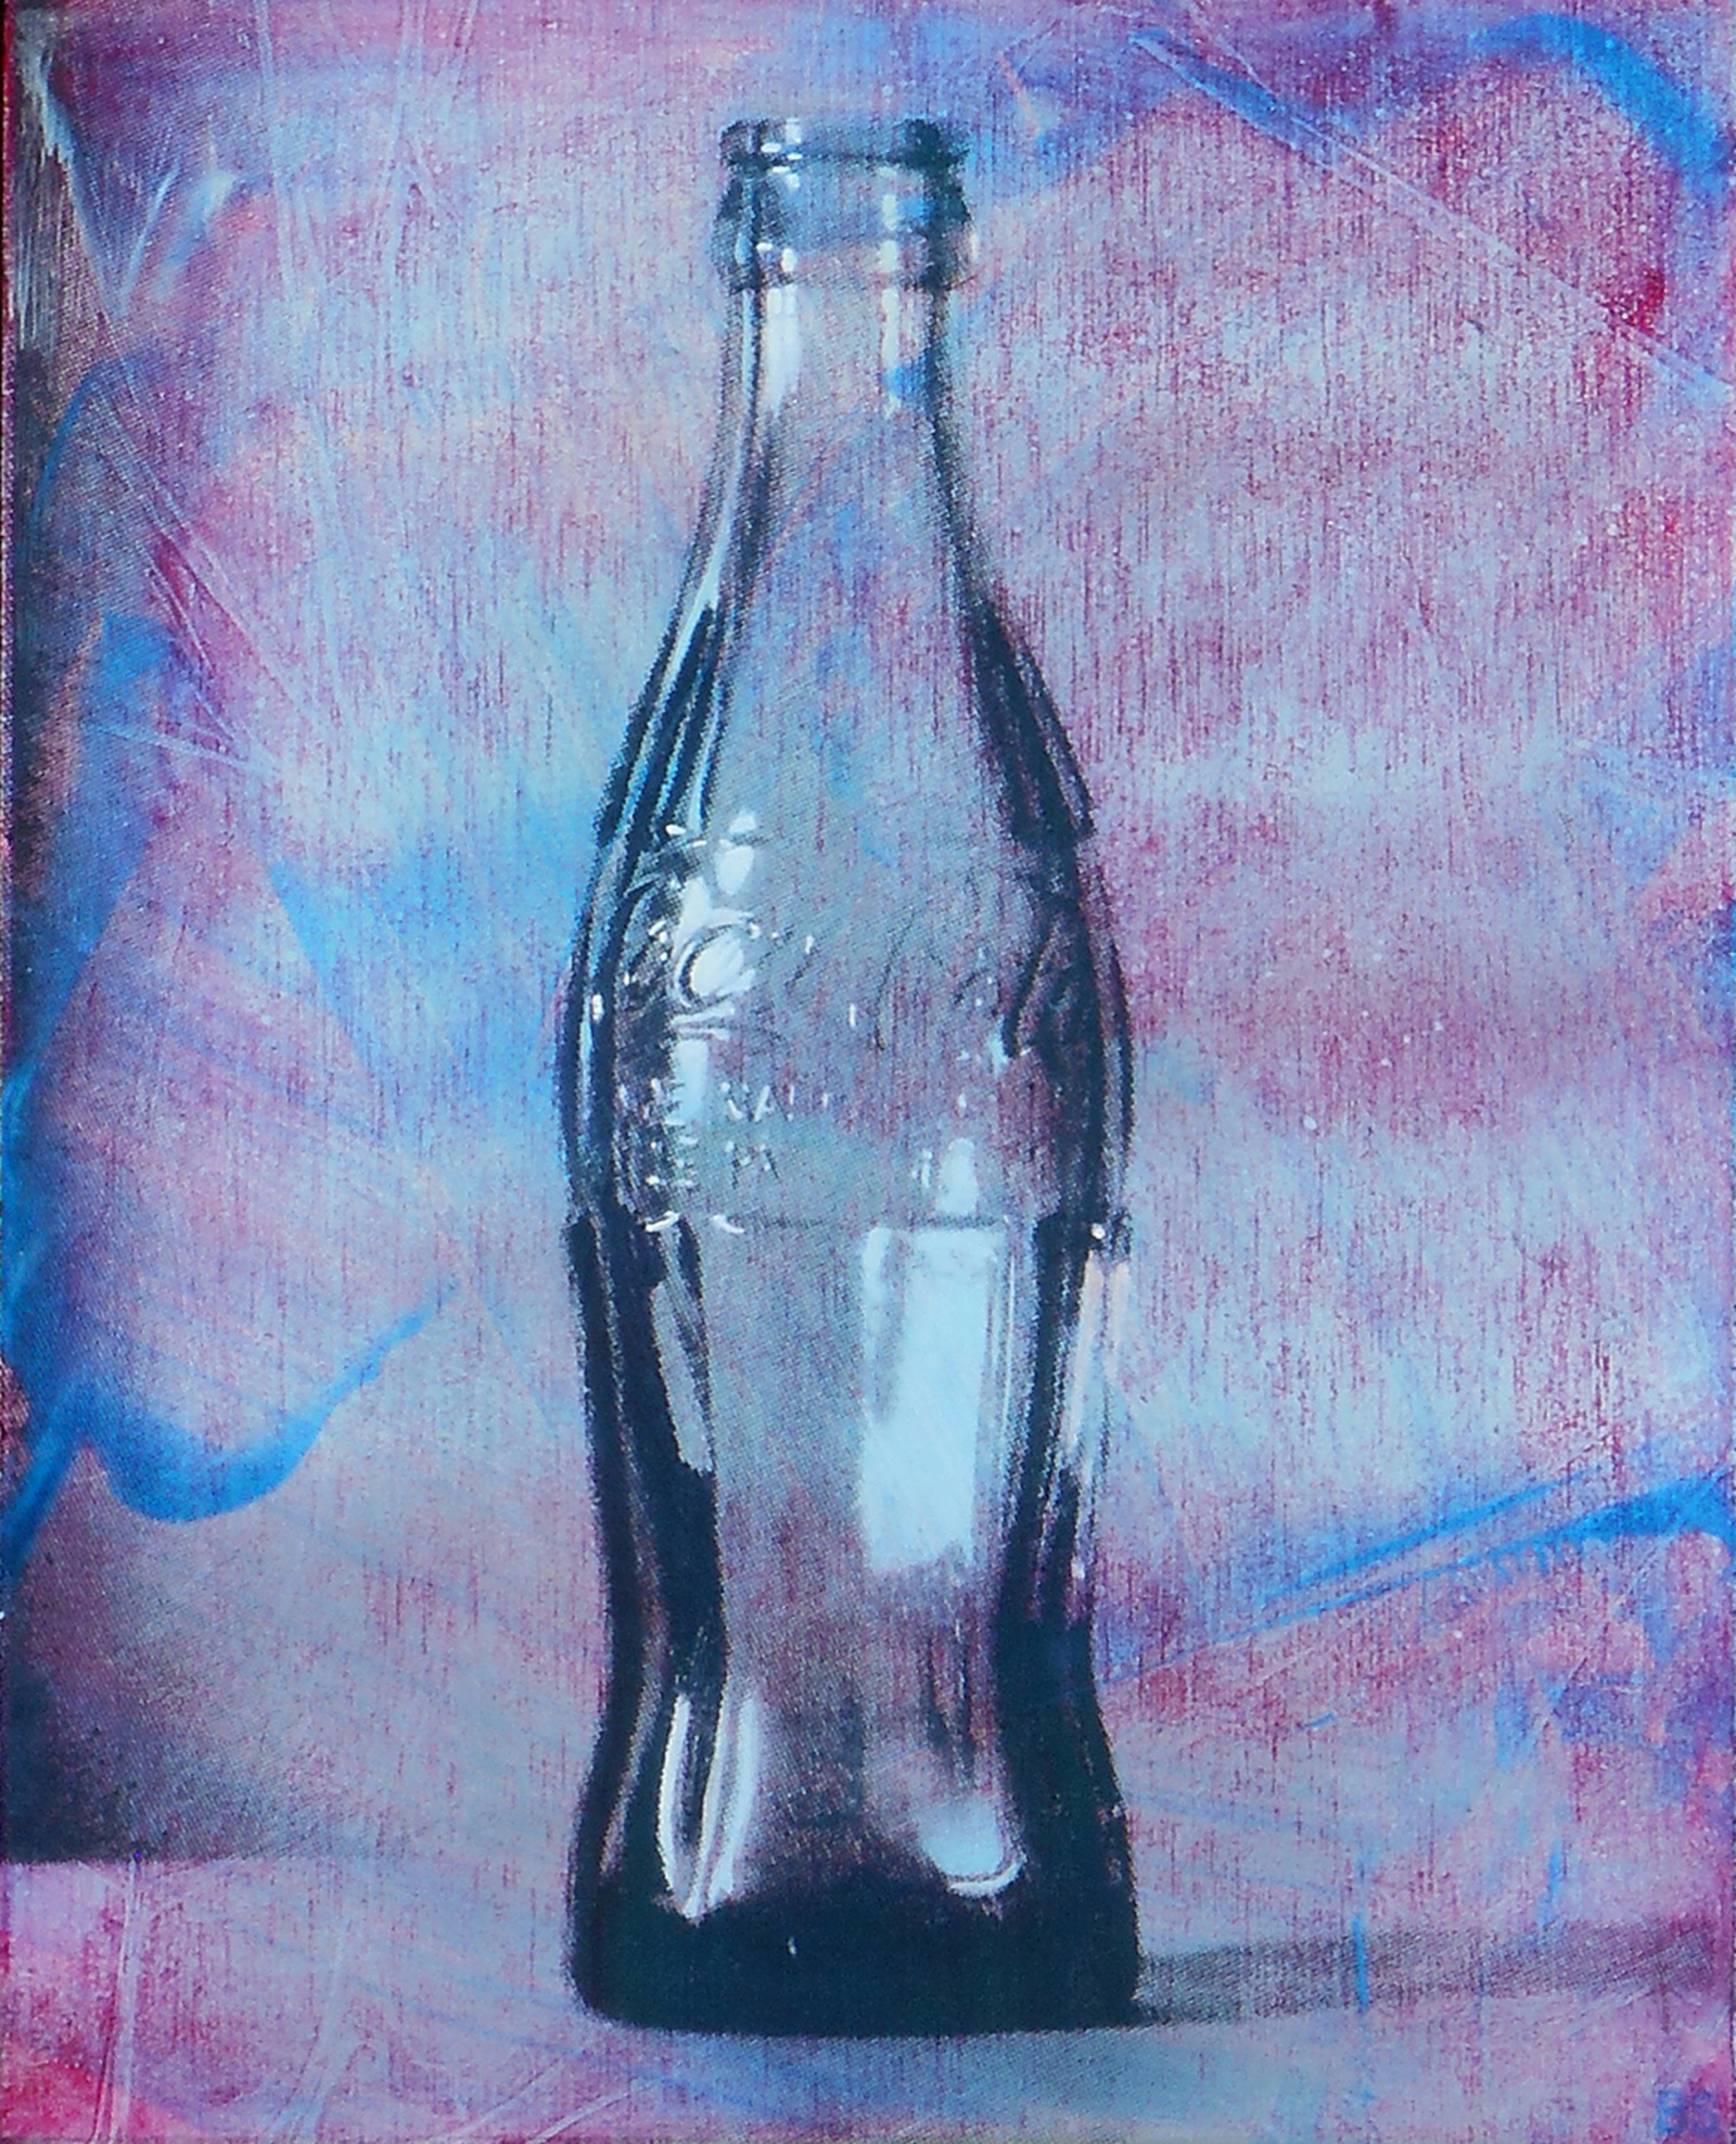 Coca Cola (Swirls) by Ben Steele